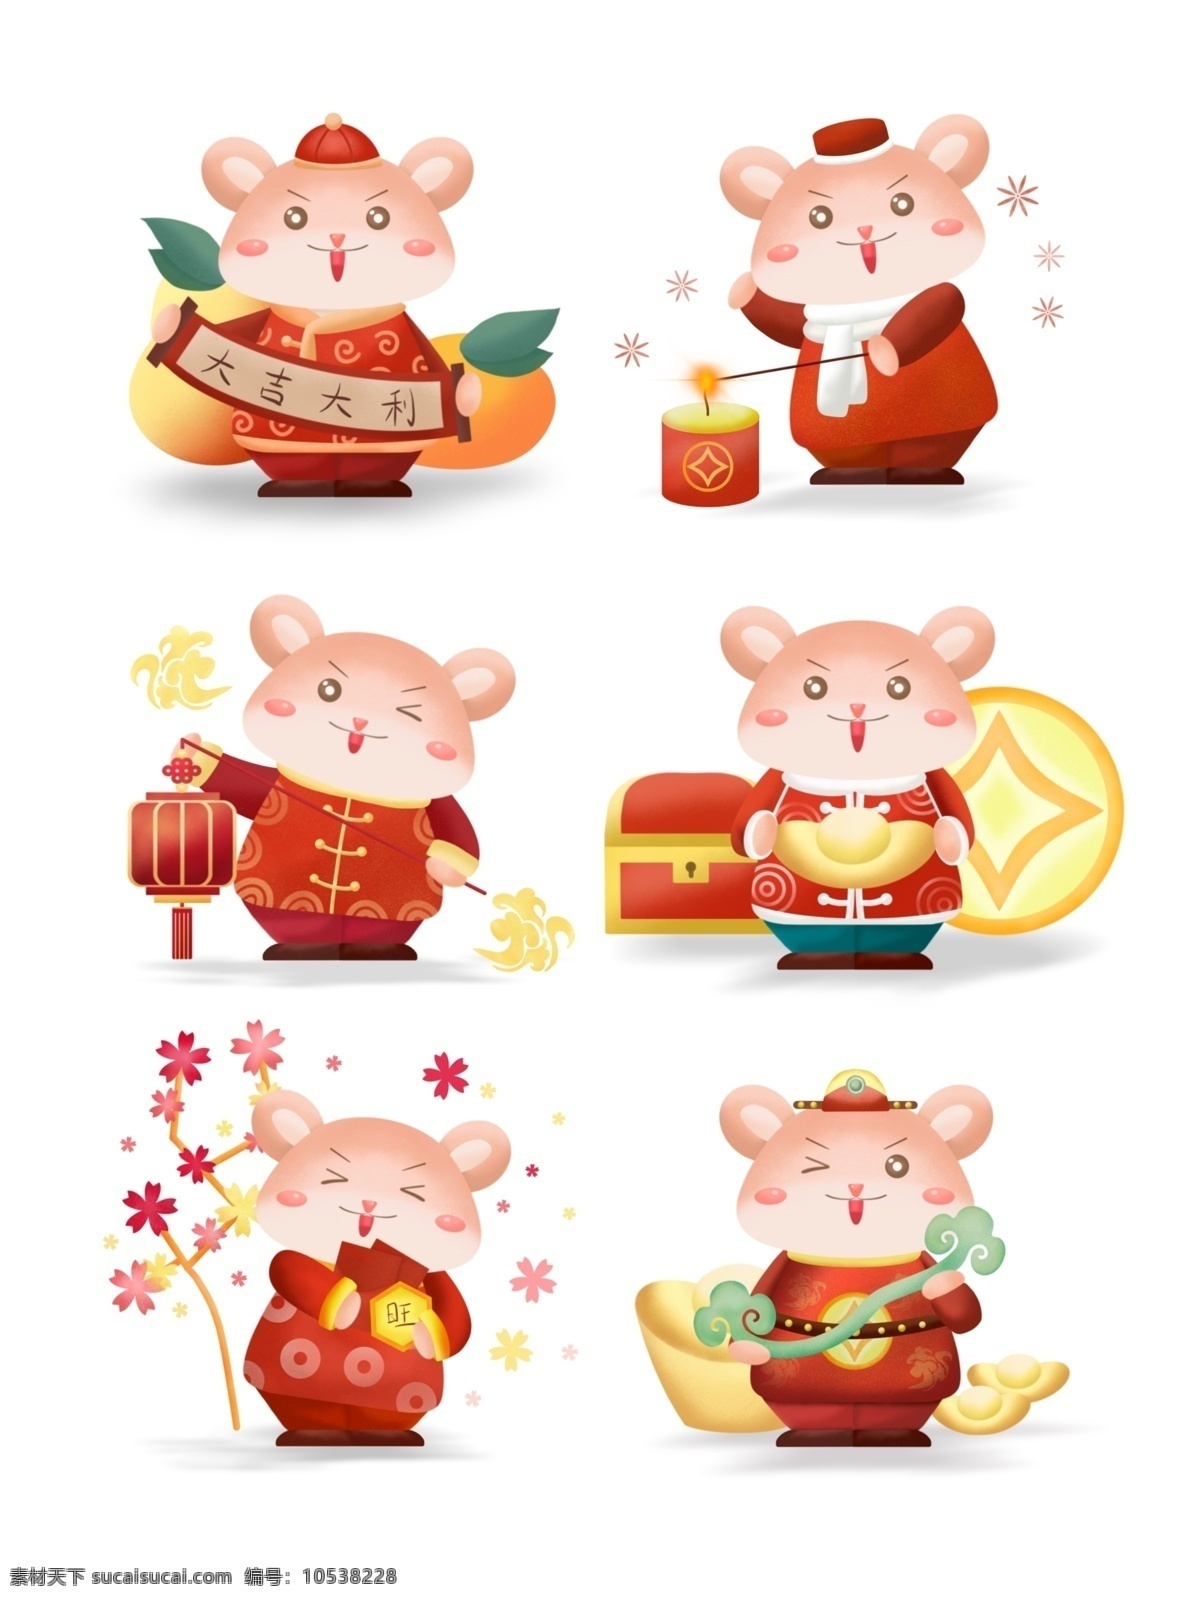 2020 鼠年 贺岁 可爱 卡通 鼠 形象 春节 卡通鼠 元宝 烟花 灯笼 红包 玉如意 大吉大利 节日装饰 装饰图案